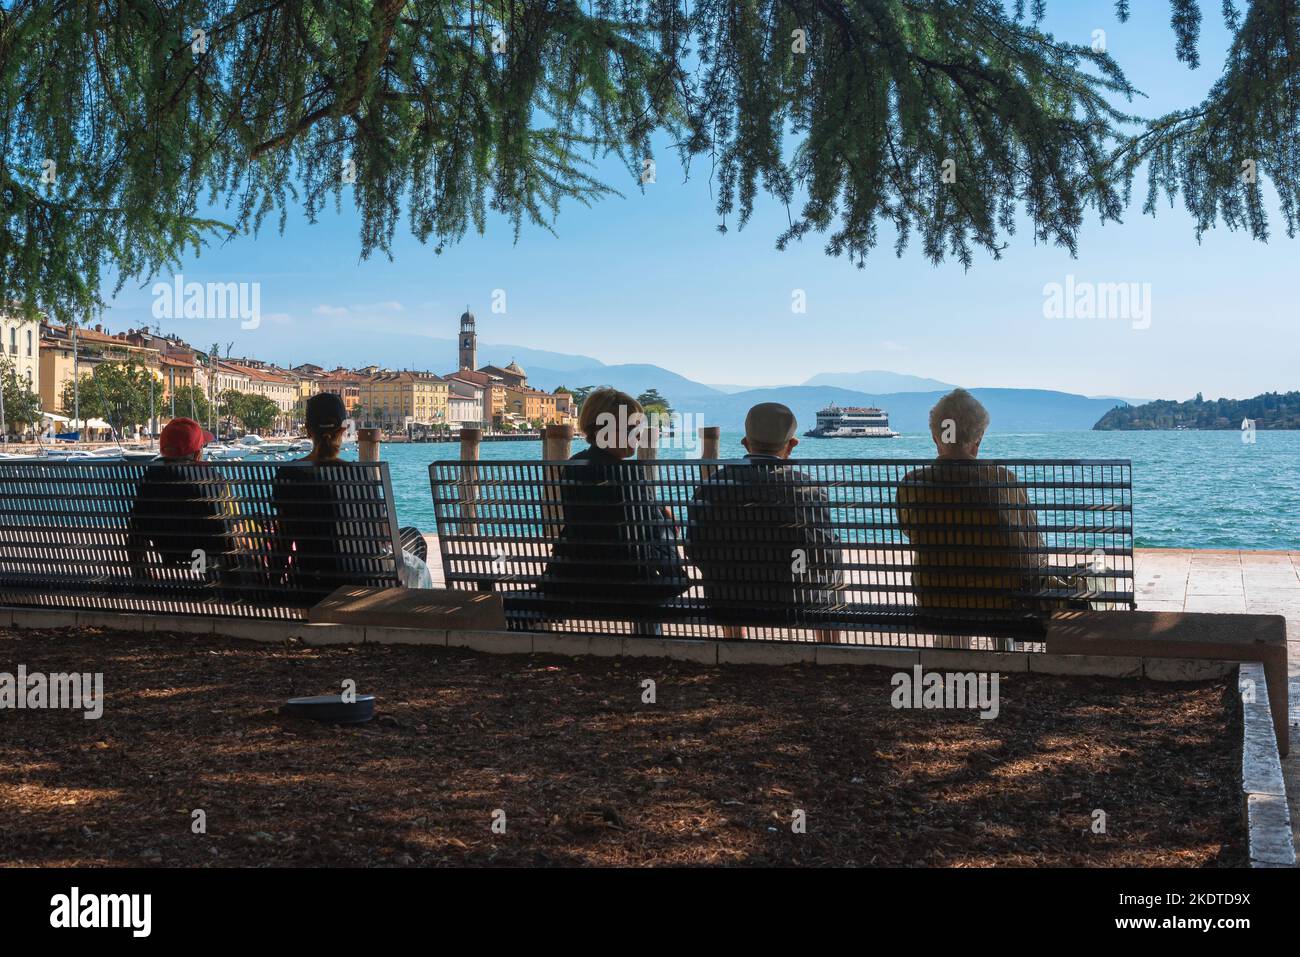 Personas mayores de verano, vista trasera de un grupo de personas mayores sentados en un banco y mirando a la pintoresca ciudad del Lago Garda de Salo, Lombardía, Italia Foto de stock